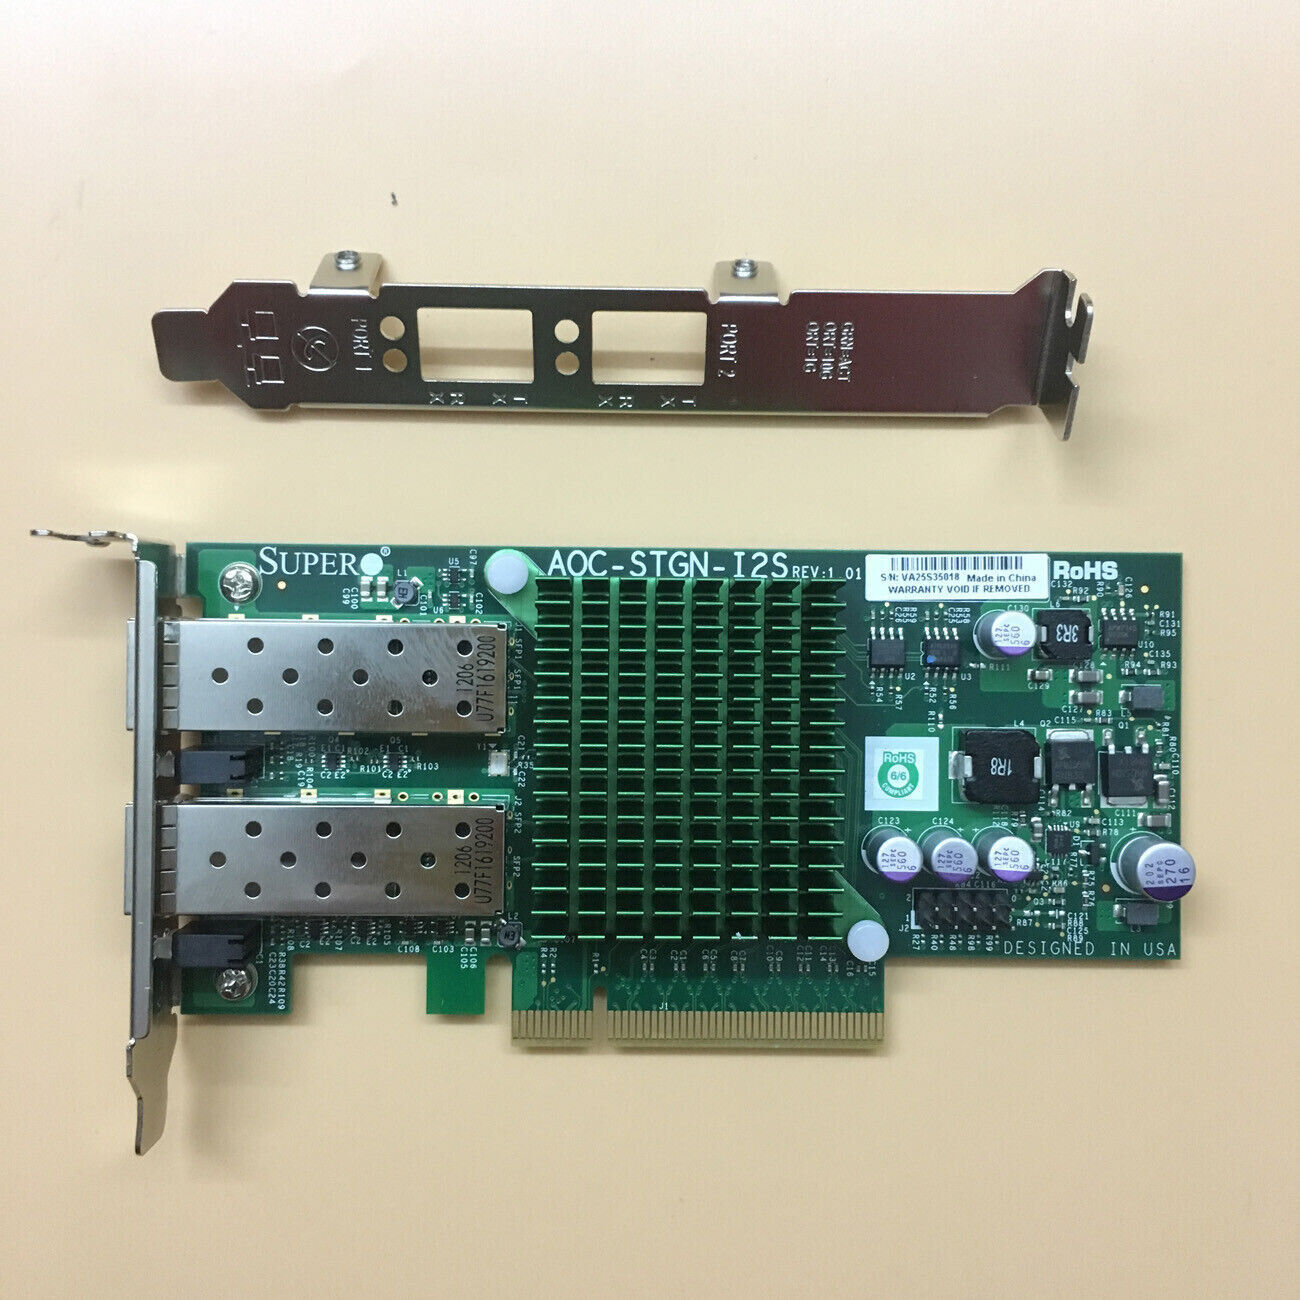 Supermicro AOC-STGN-i2S Dual 10Gbps SFP+ Intel 82599 X520-DA2 NIC PCIE REV 1.0